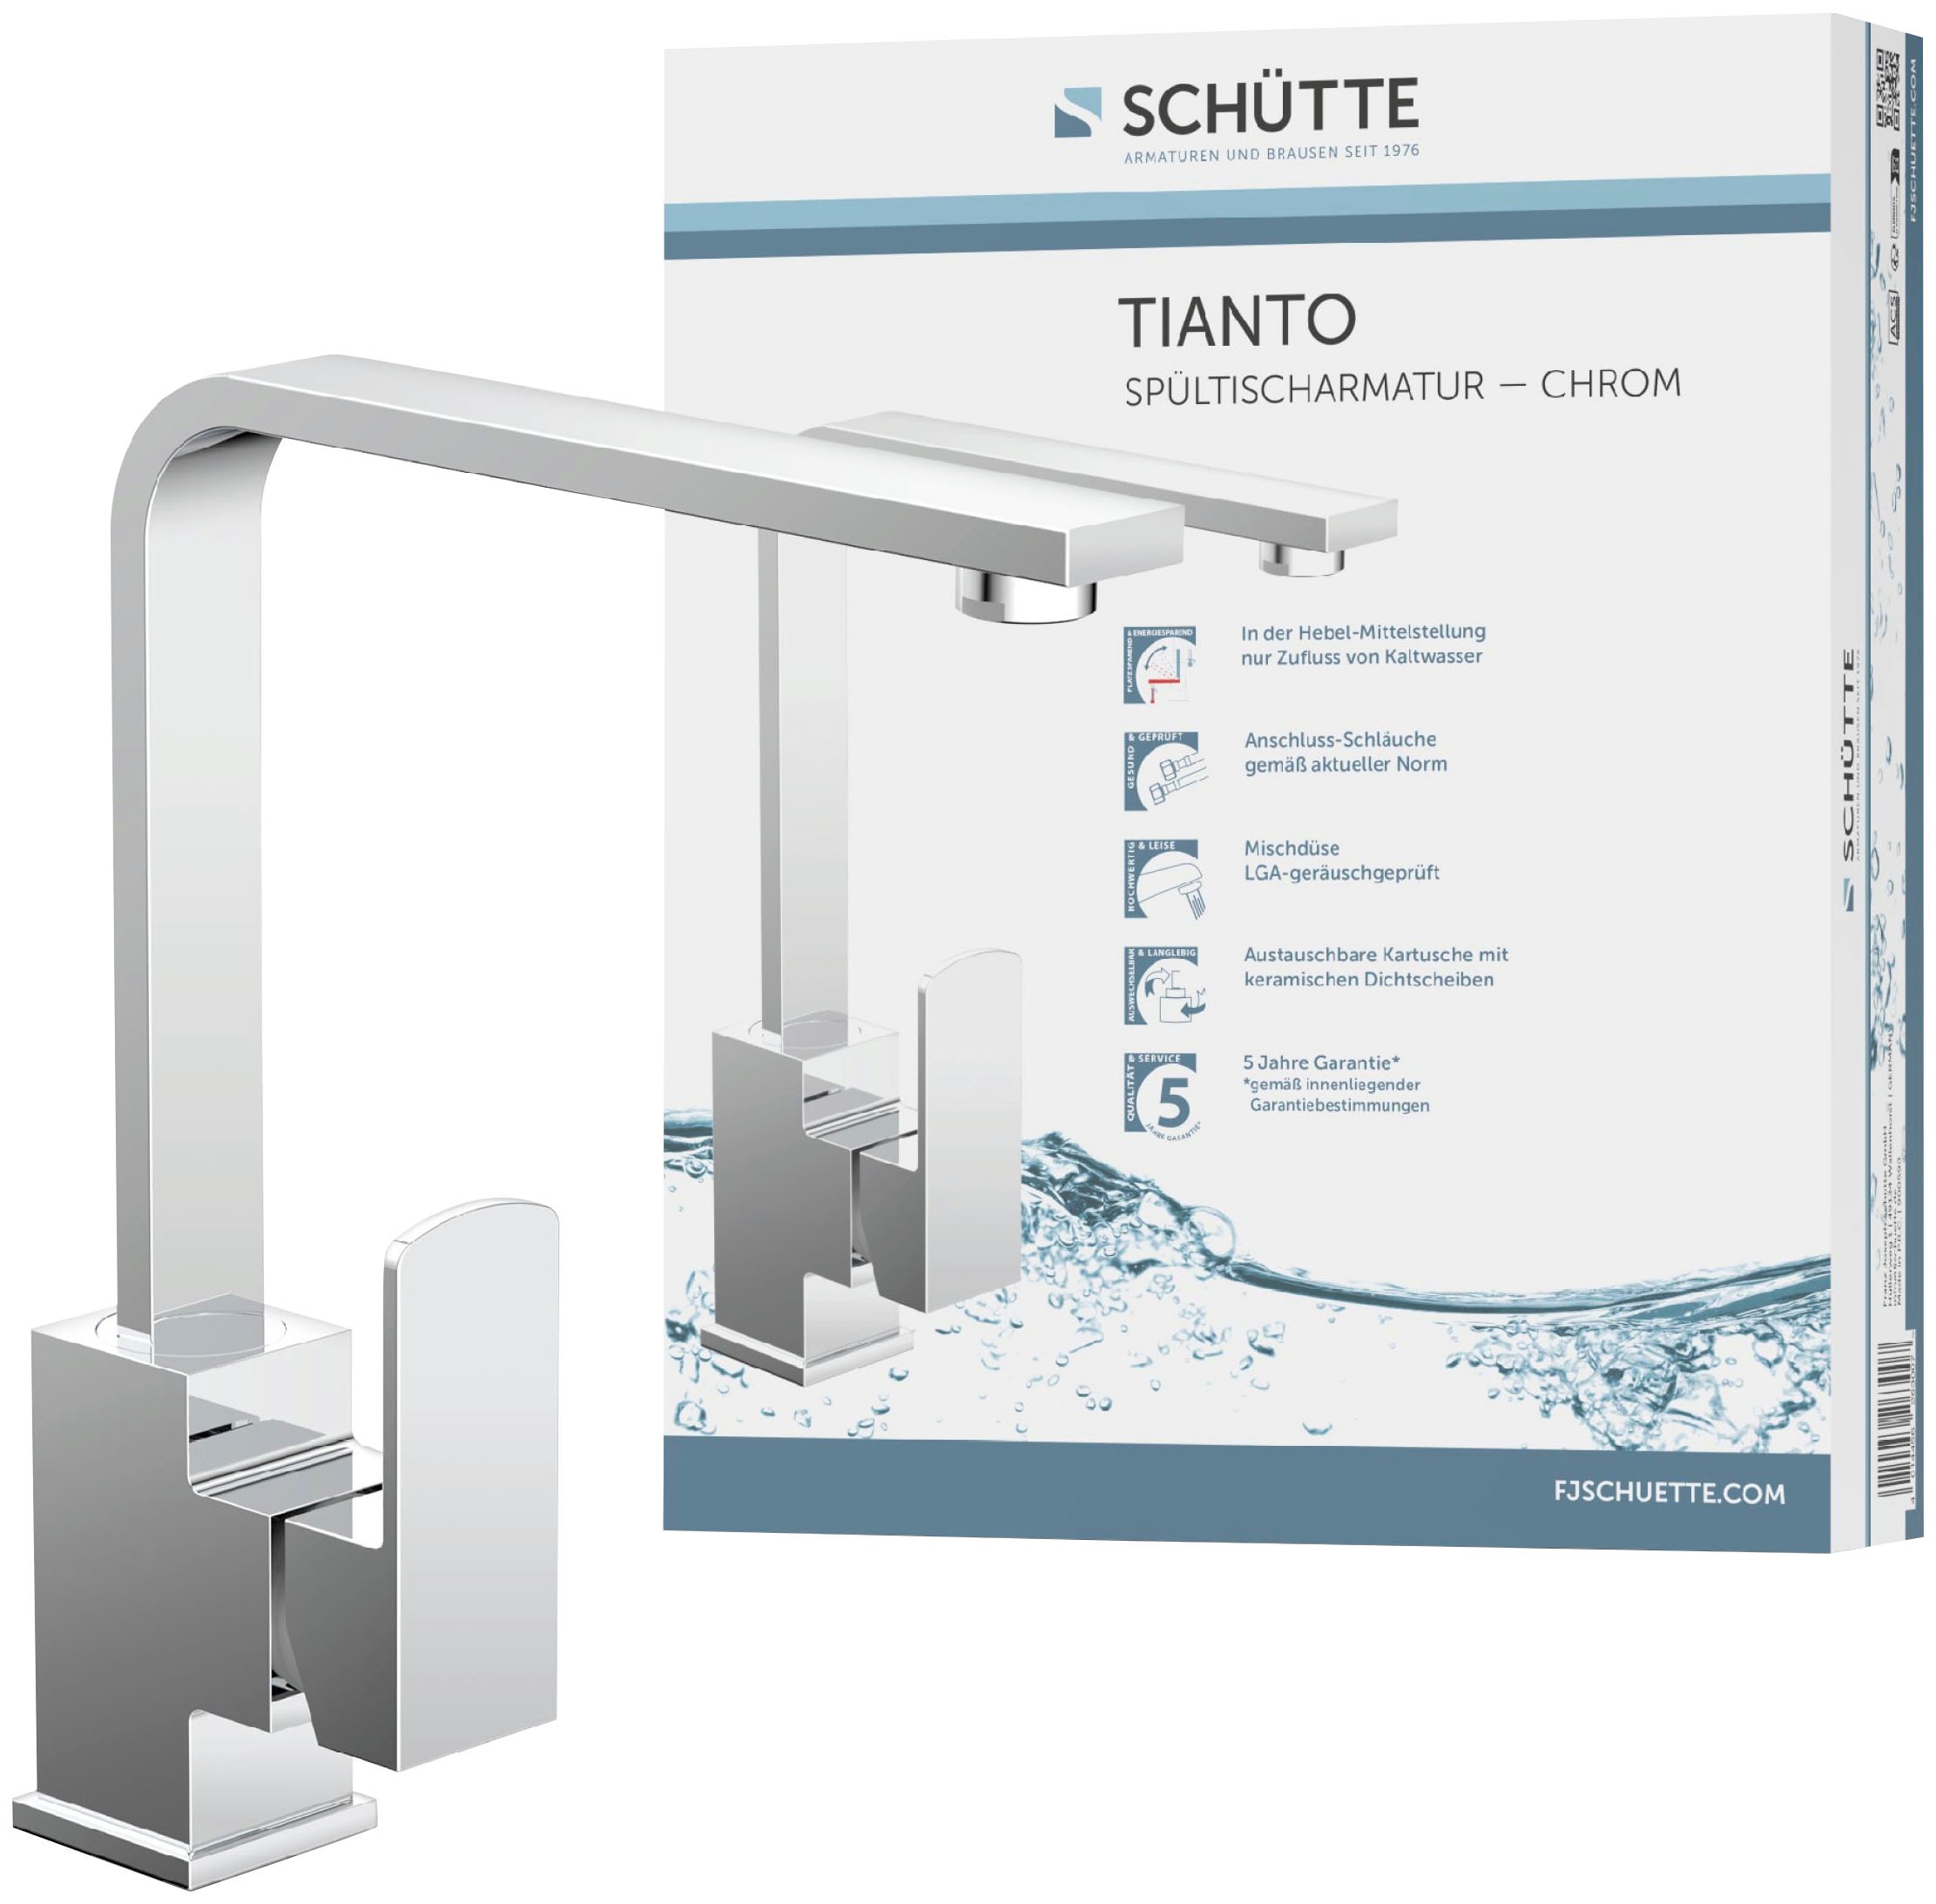 Schütte Spültischarmatur »Tianto«, 360° schwenkbarer Wasserhahn, Mischbatterie, Chrom, Hochdruck